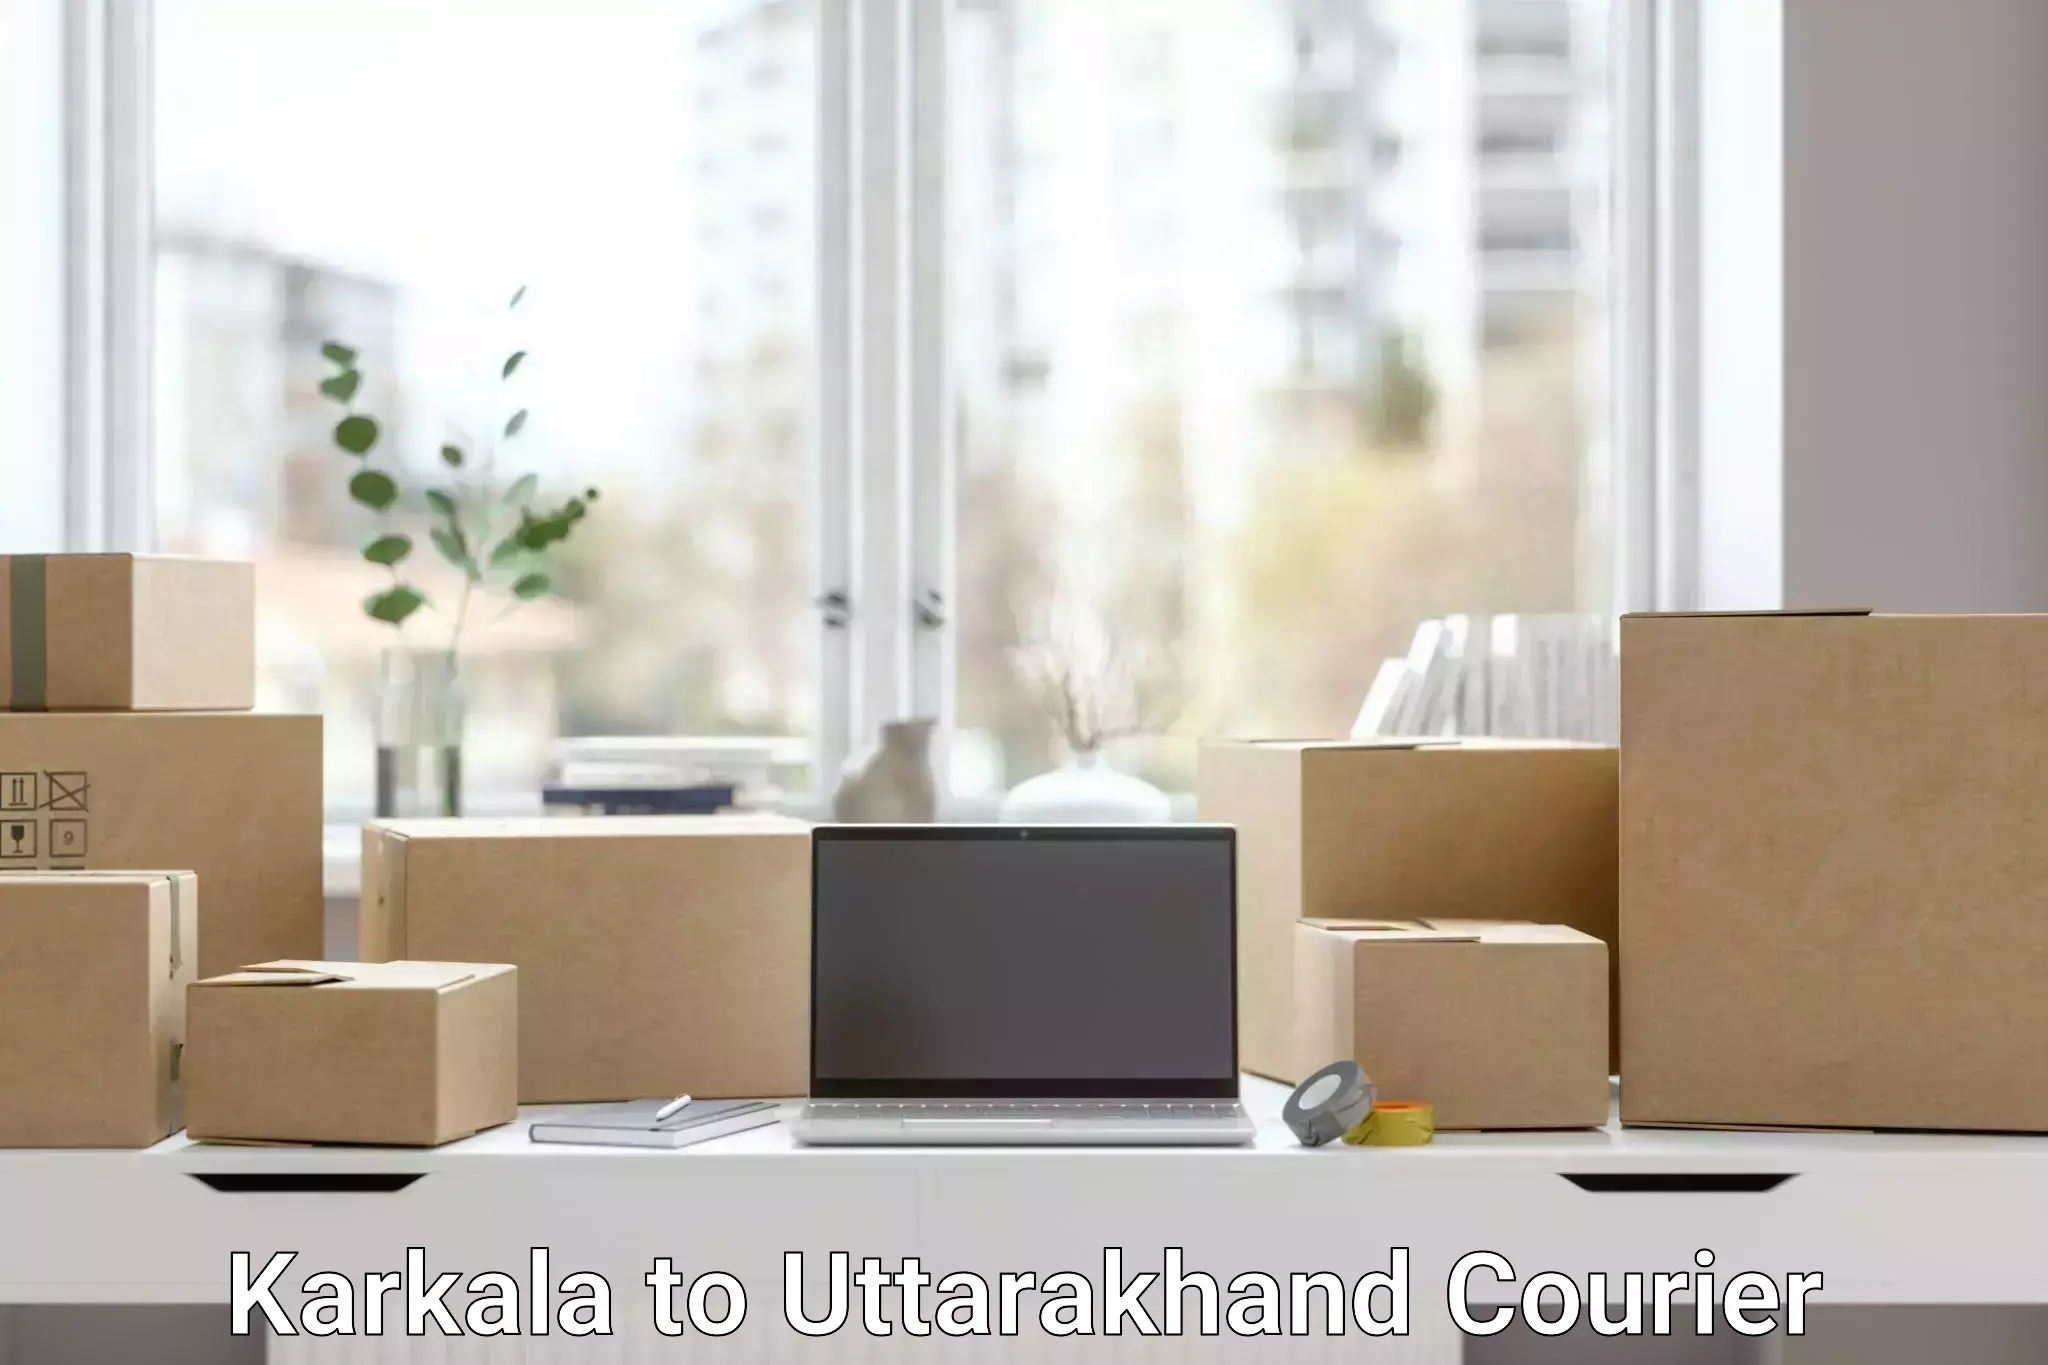 High-capacity courier solutions Karkala to Nainital